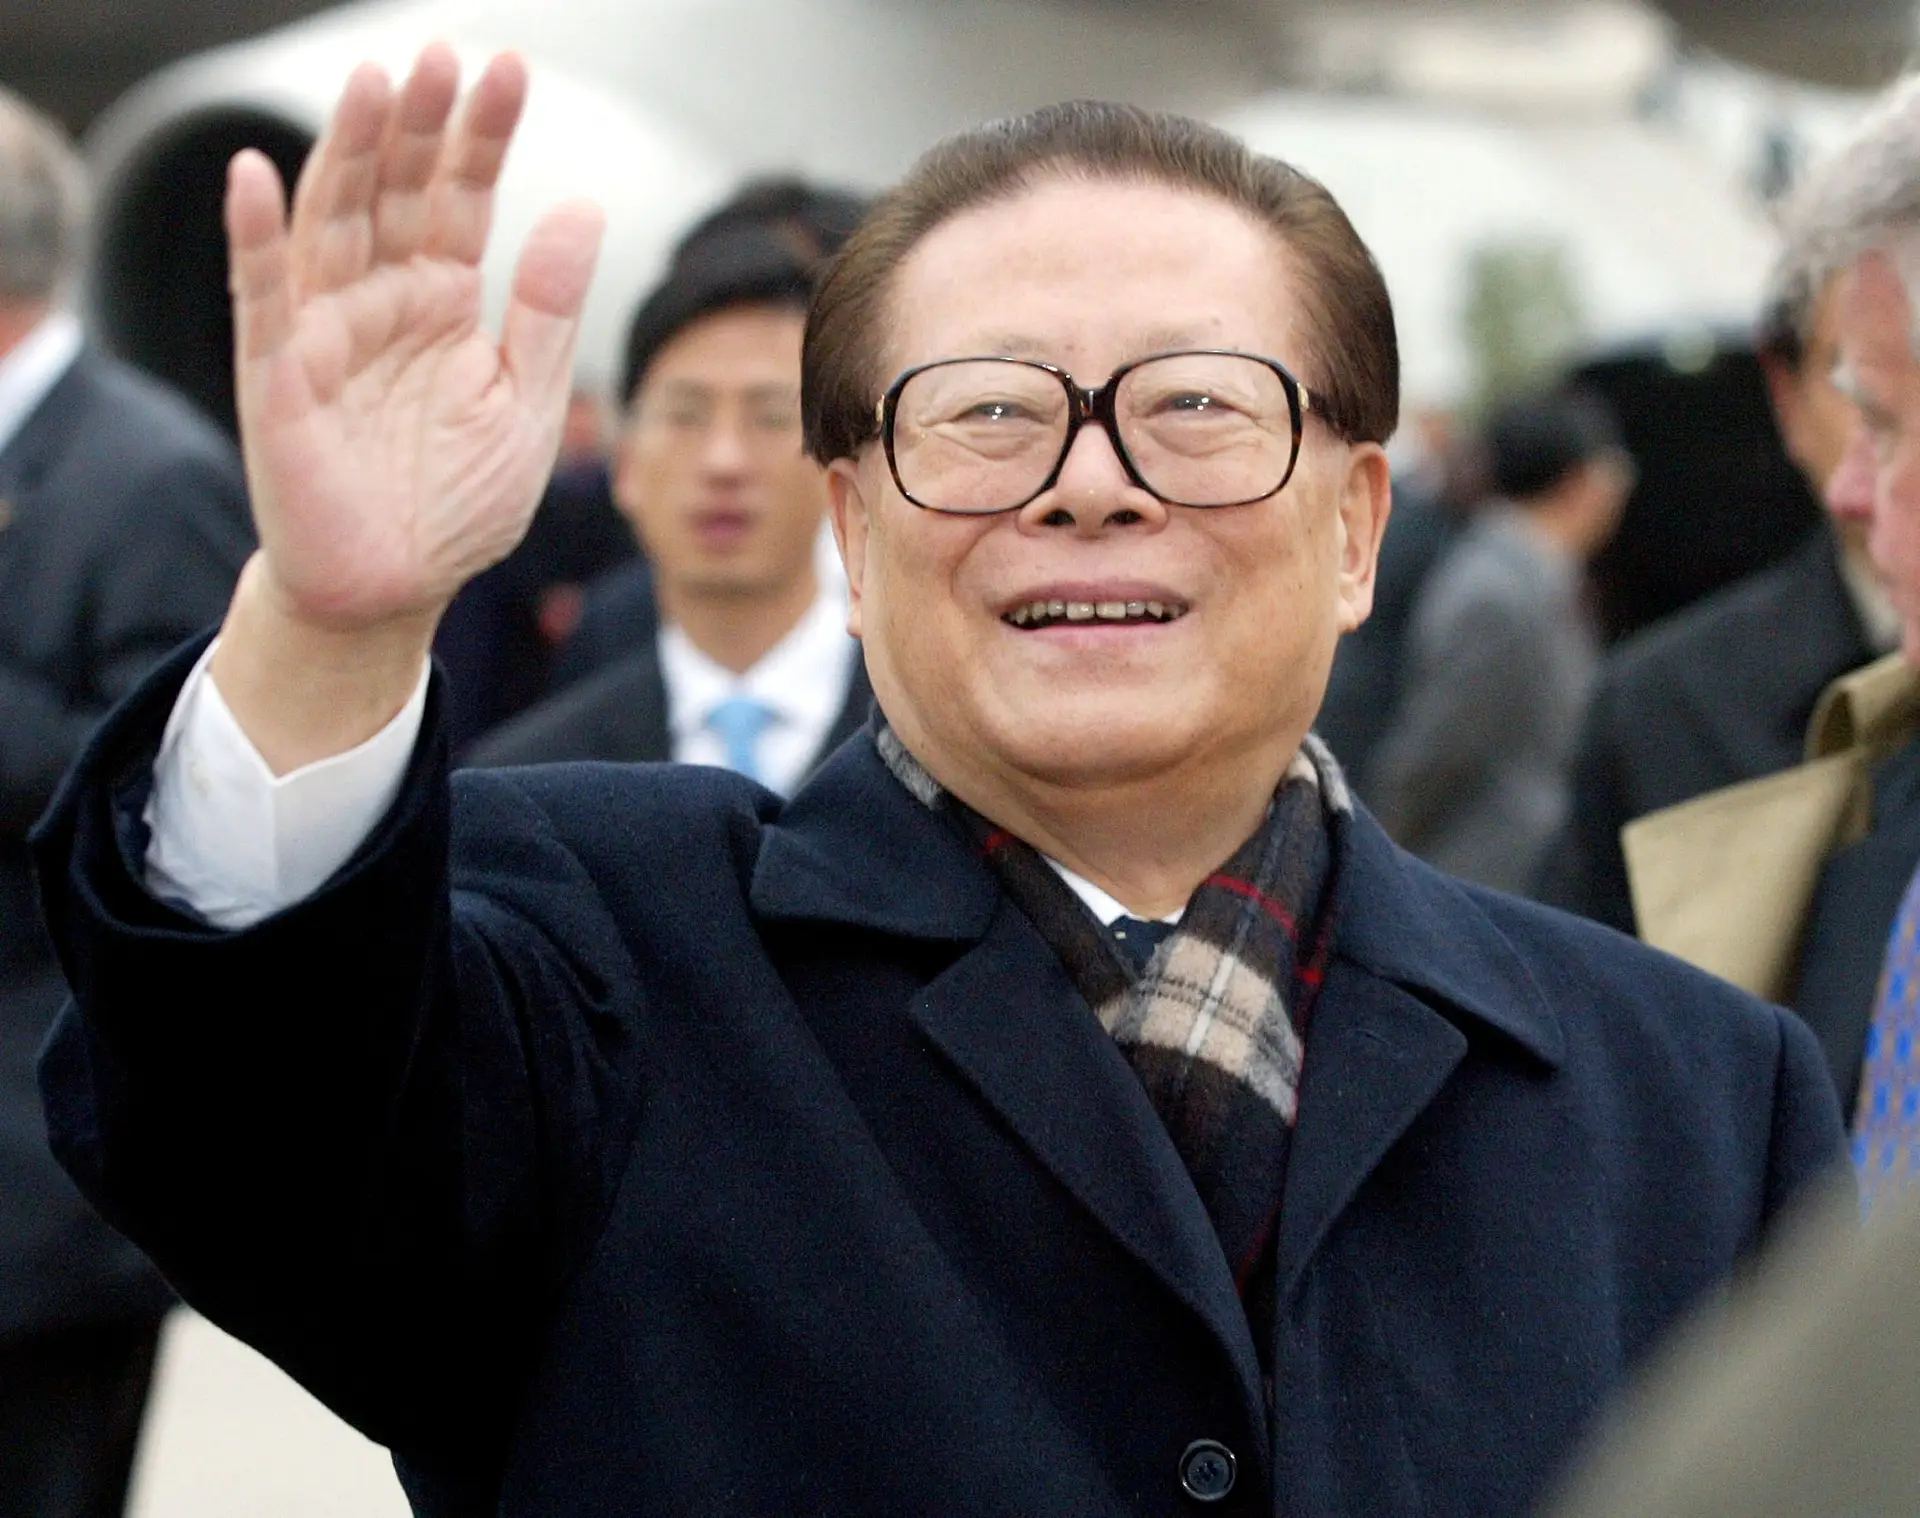 Brasil lamenta morte de Jiang Zemin e recorda contributo para fortalecer relações